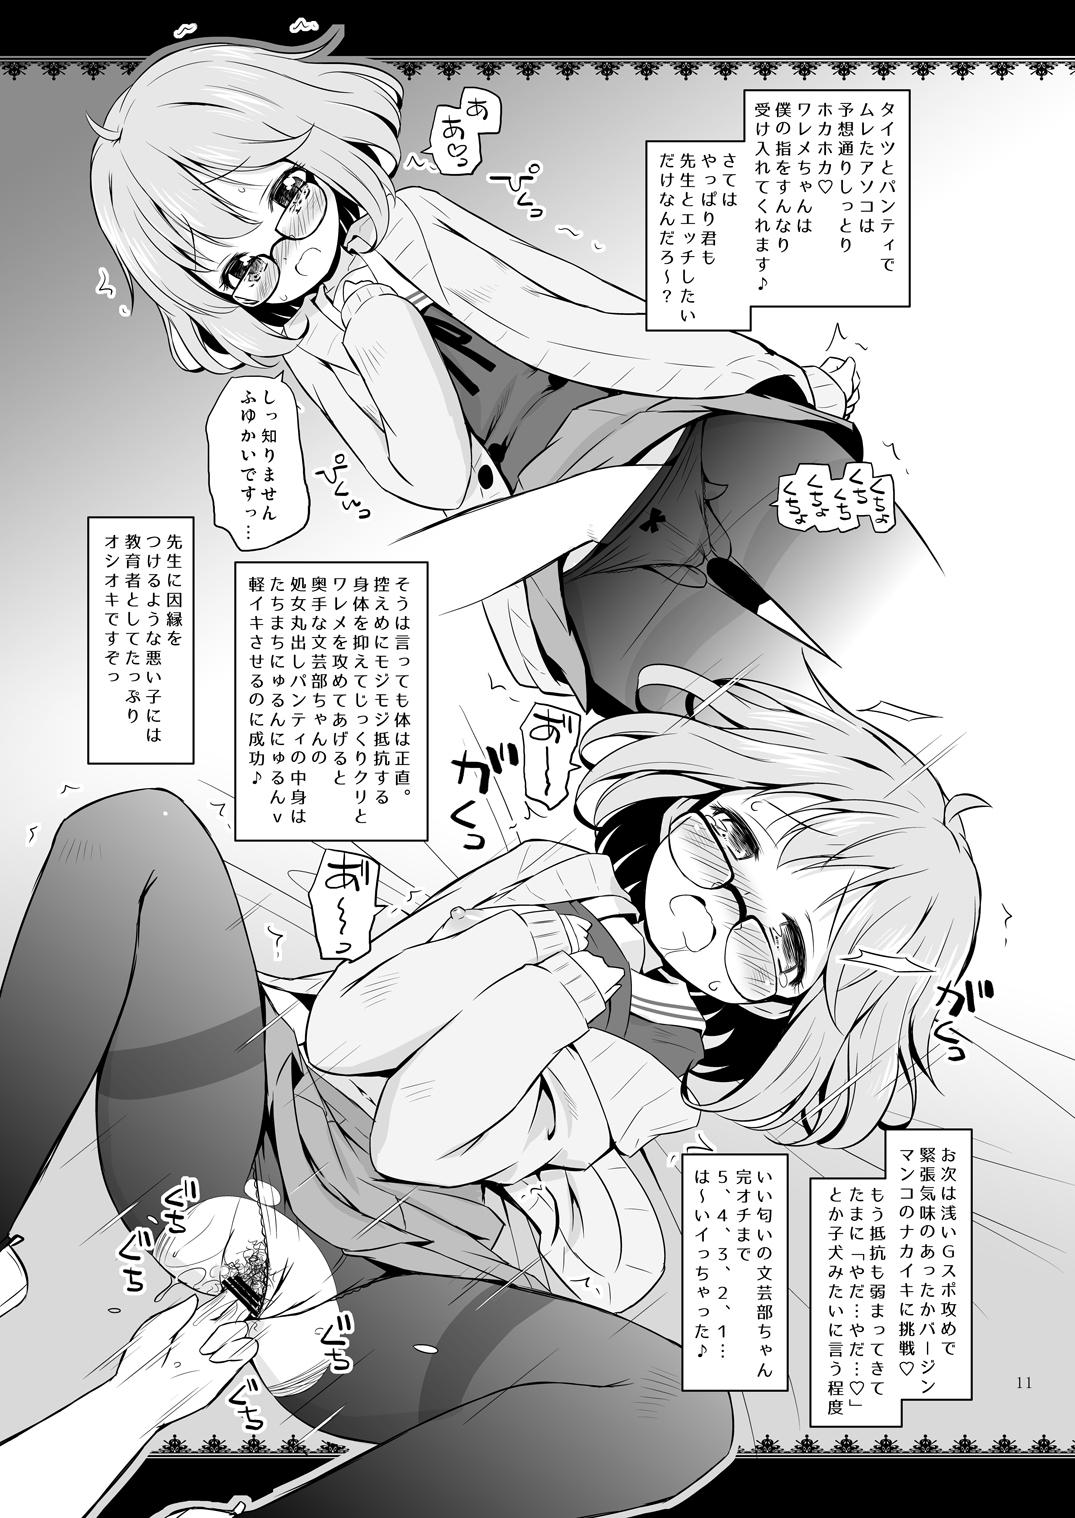 Erotic Super Harem Gakuen 2015 winter - Gochuumon wa usagi desu ka Kyoukai no kanata Oiled - Page 10